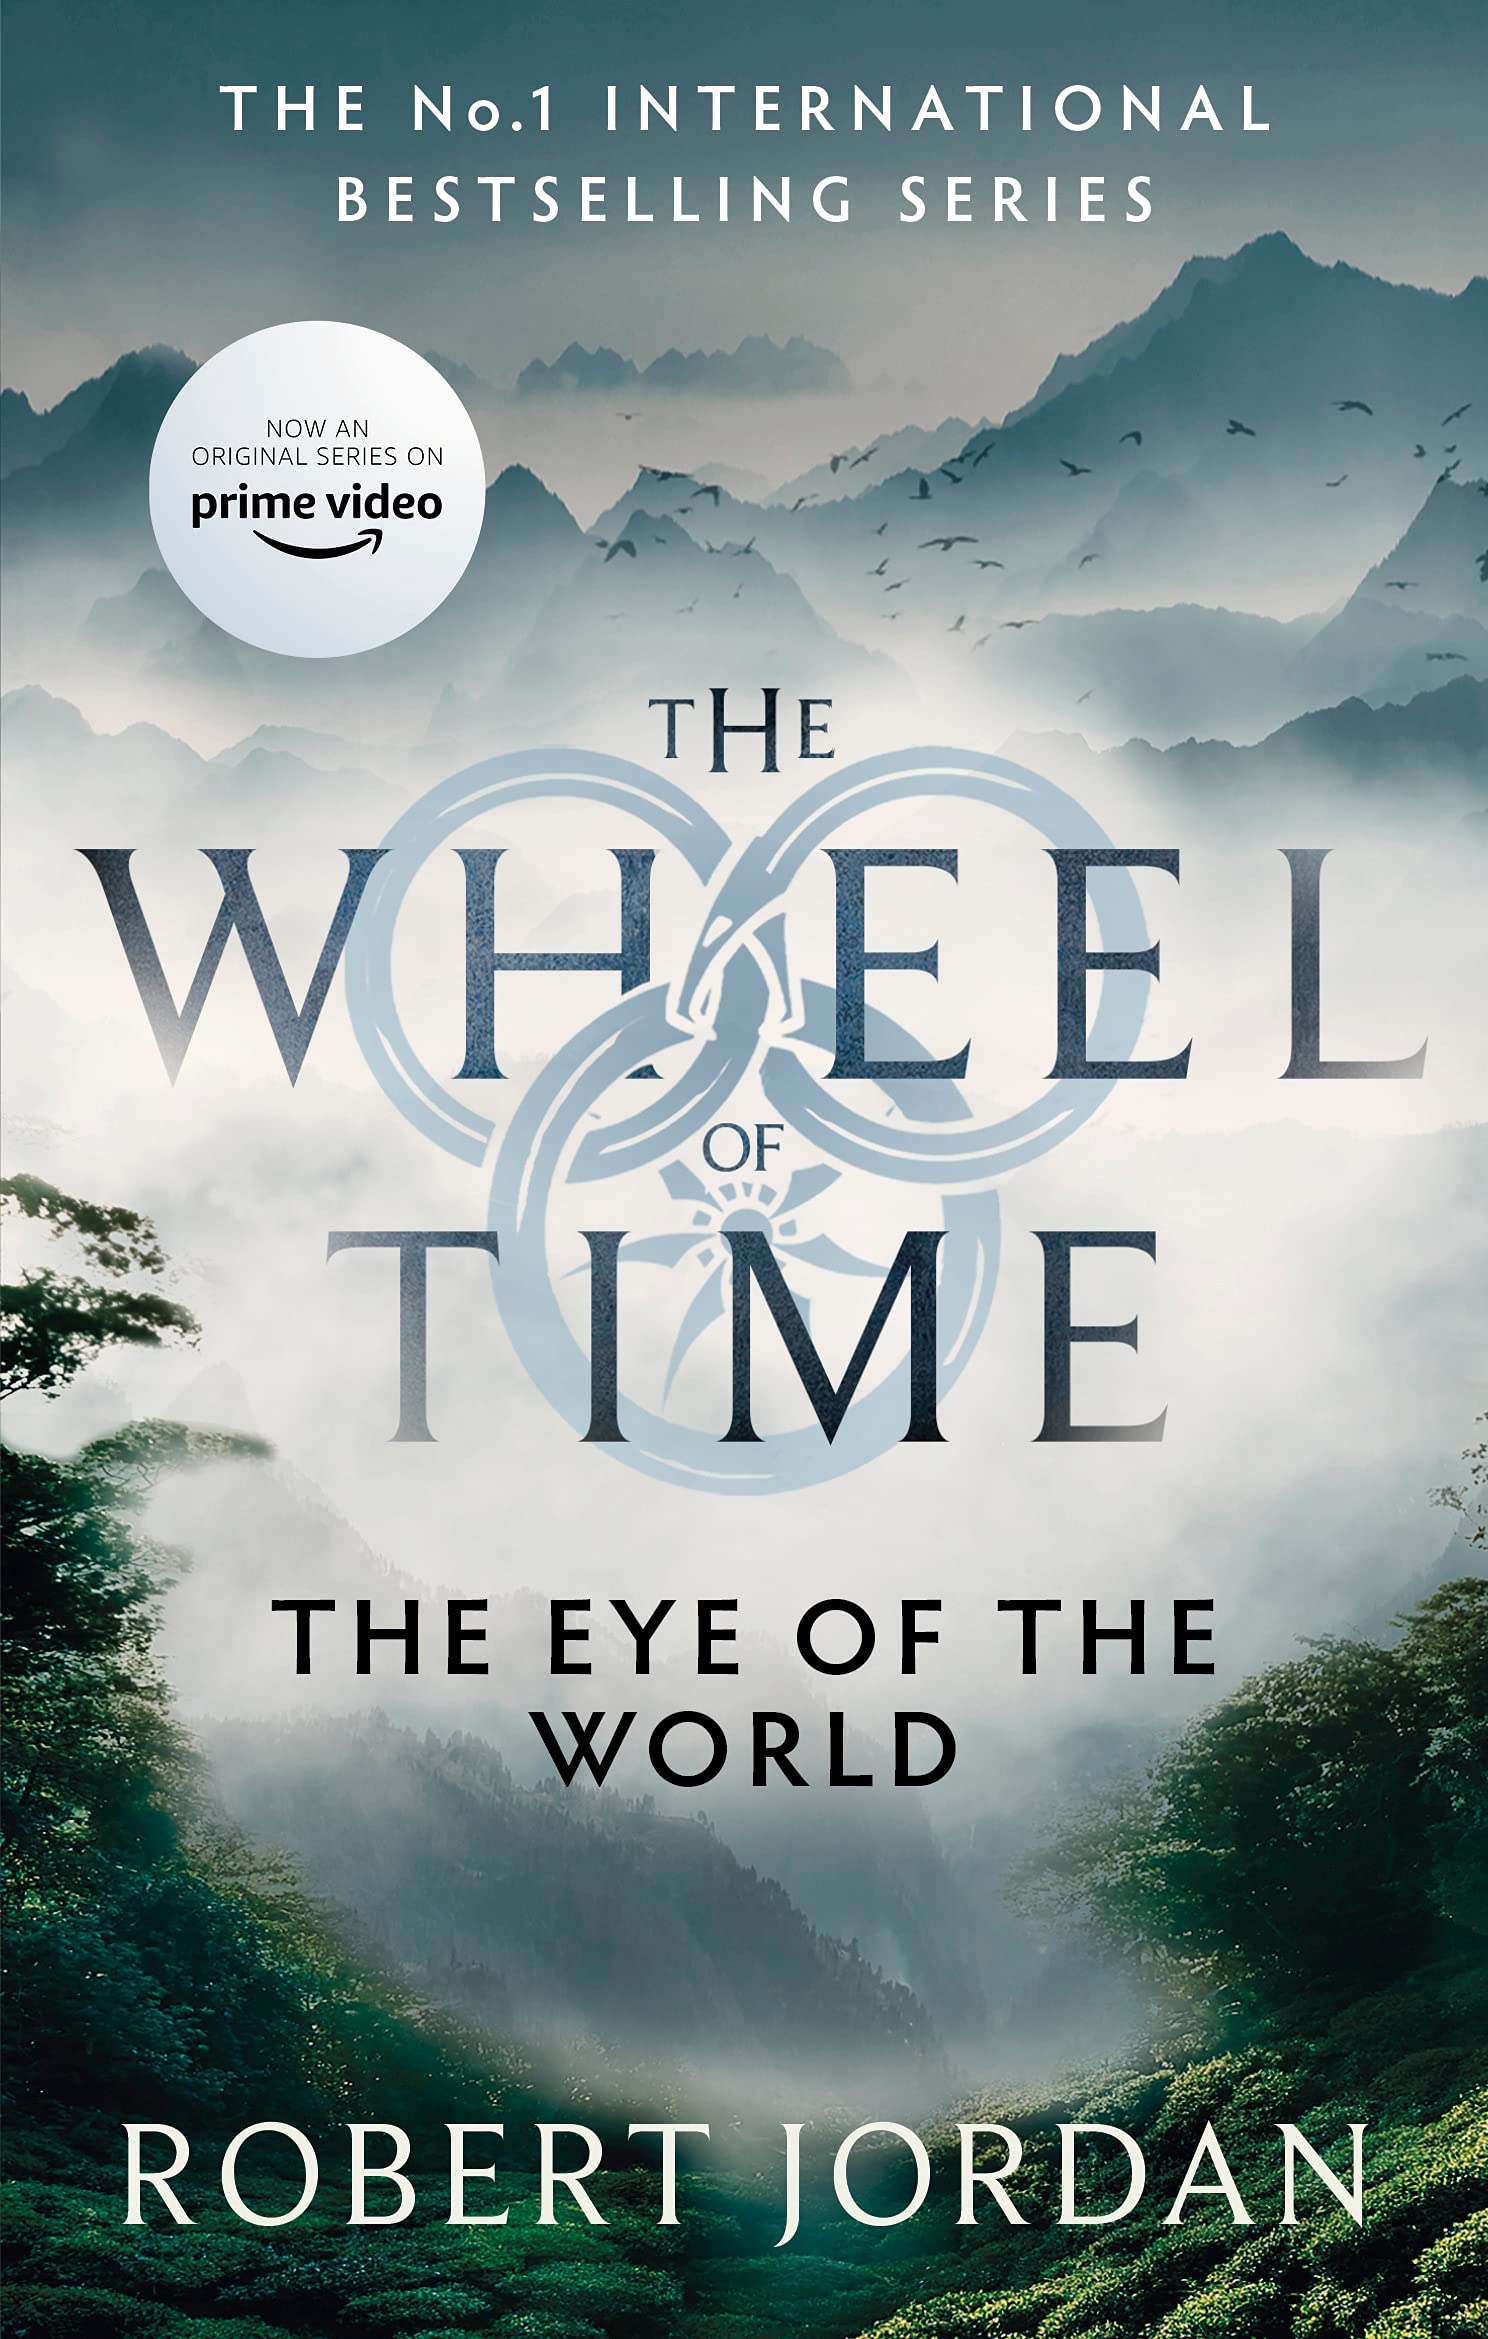 时光之轮1 世界之眼 美剧原著 奇幻小说 裴淳华 英文原版 The Eye Of The World: Book 1 of the Wheel of Time